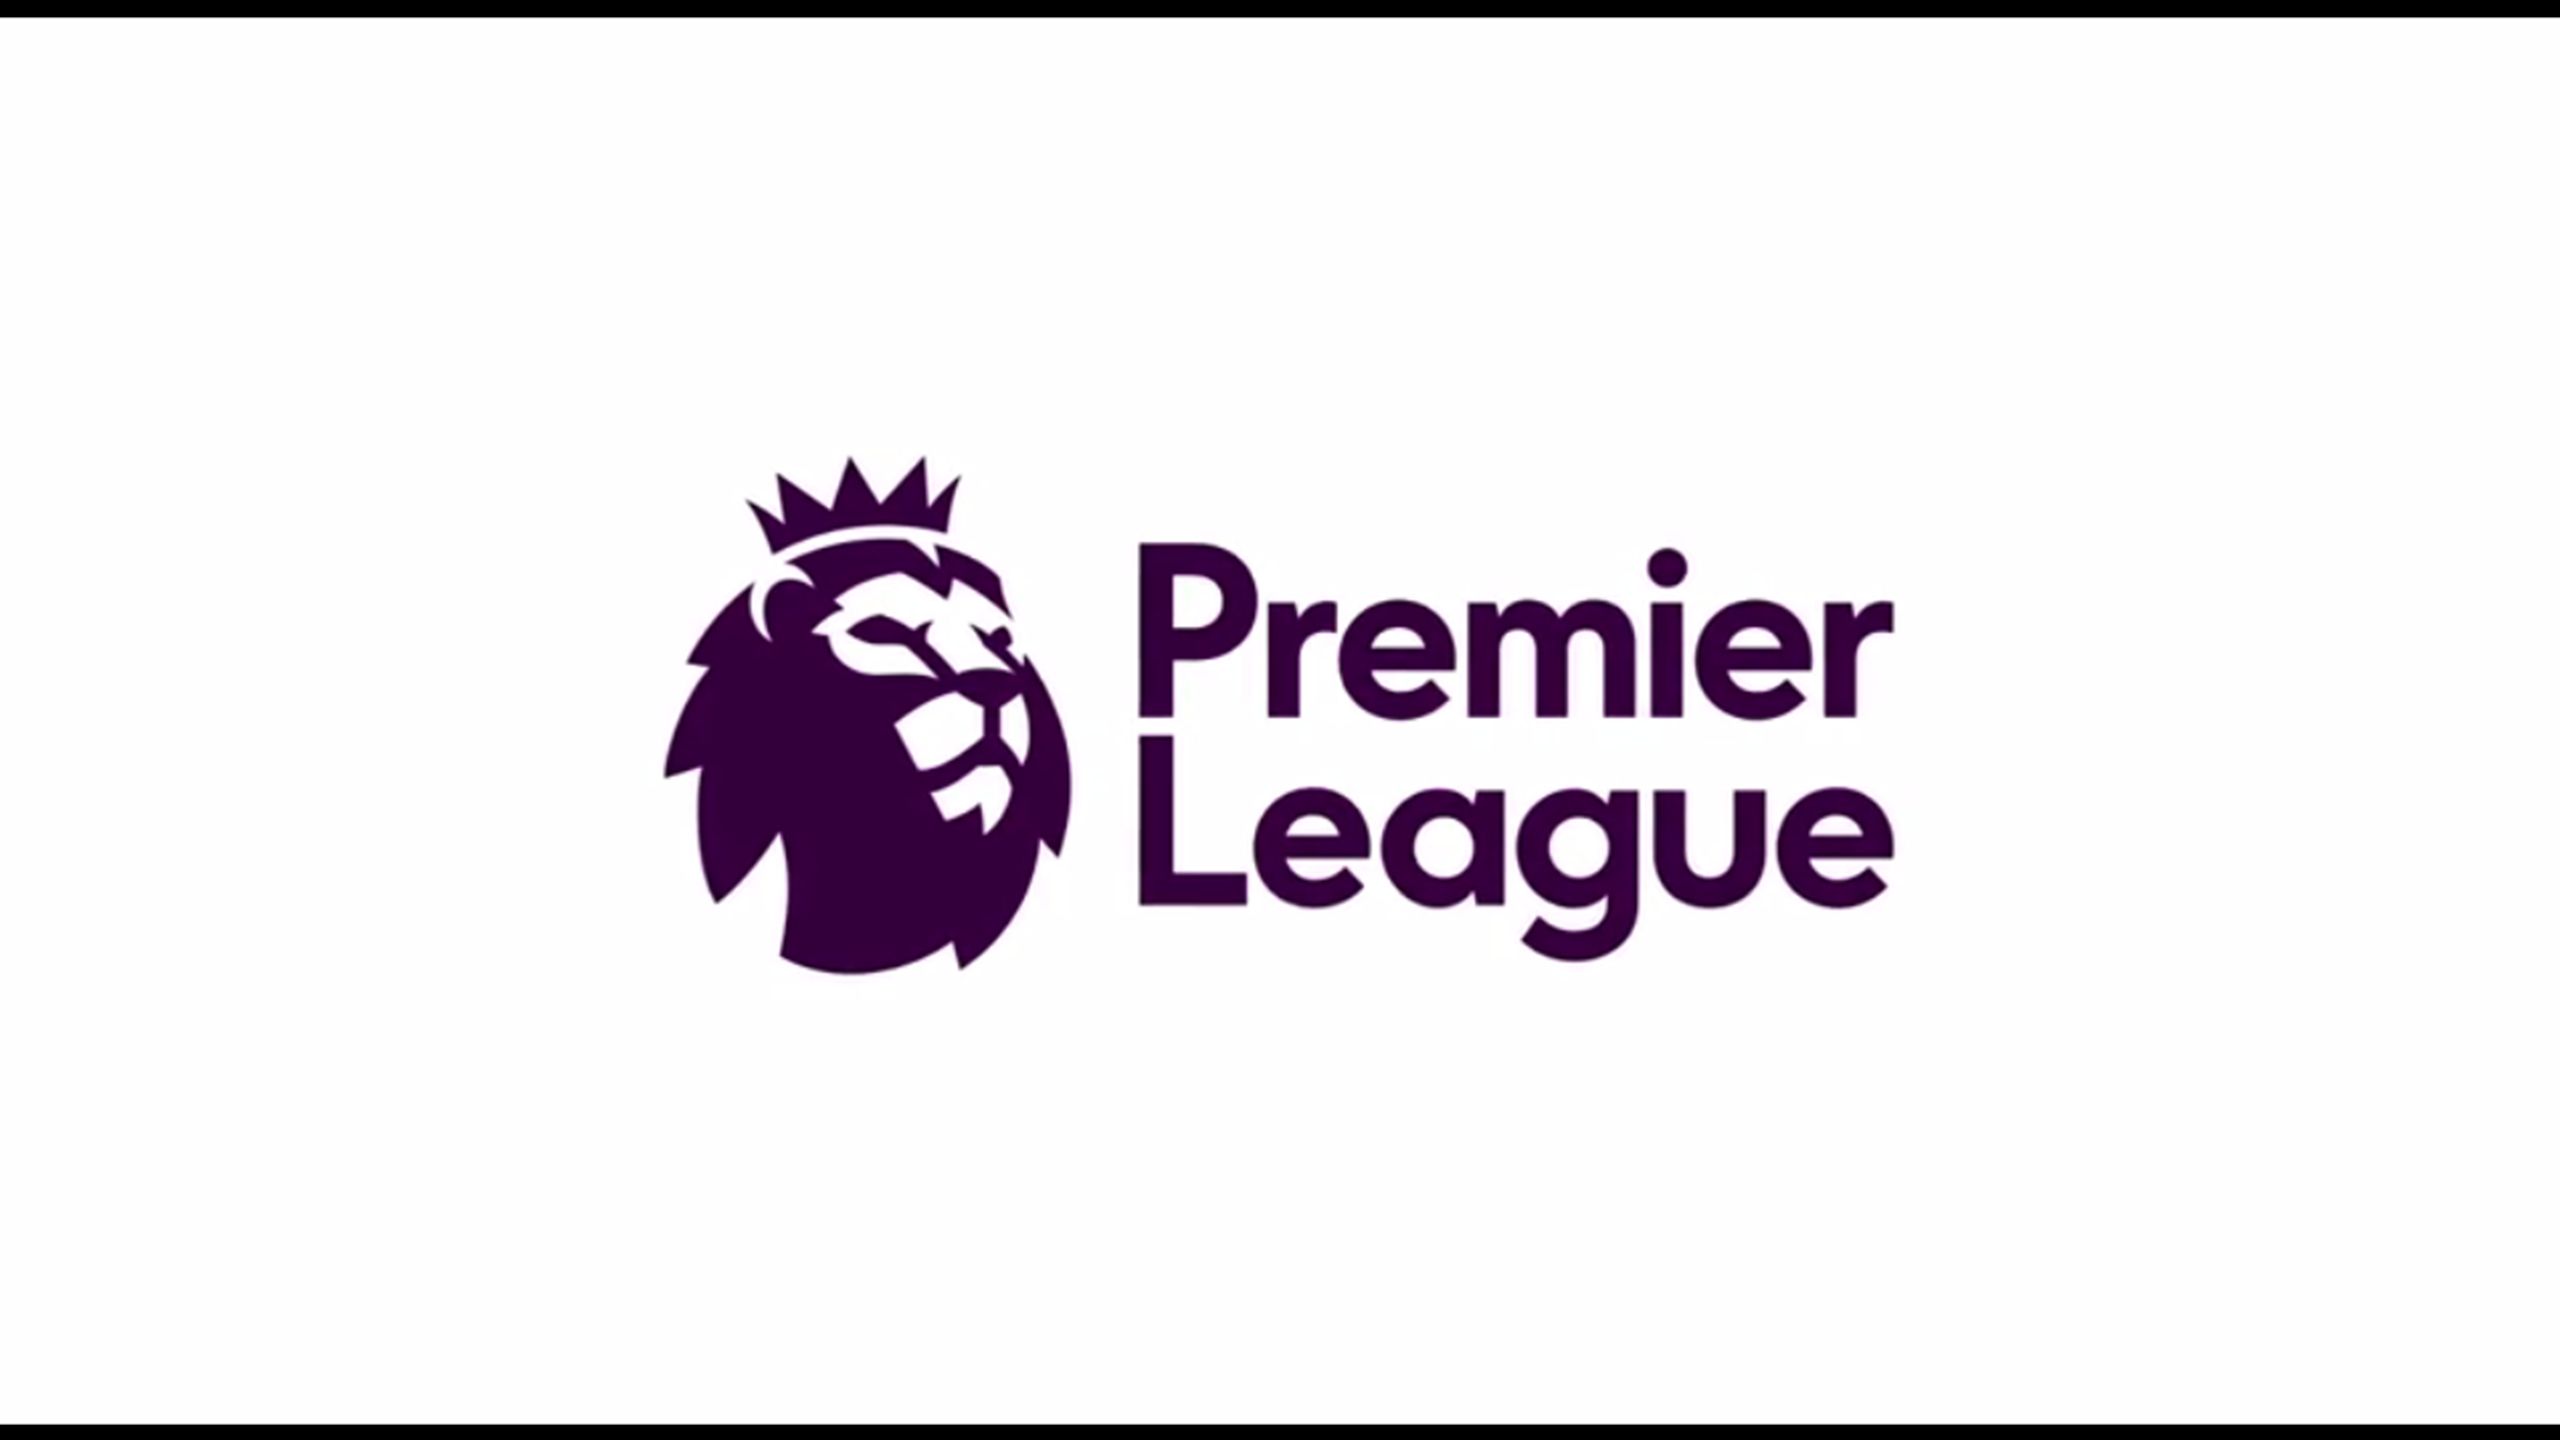 La Premier League abandonne son sponsor et dévoile un nouveau logo avec une  tête de lion couronné - Eurosport